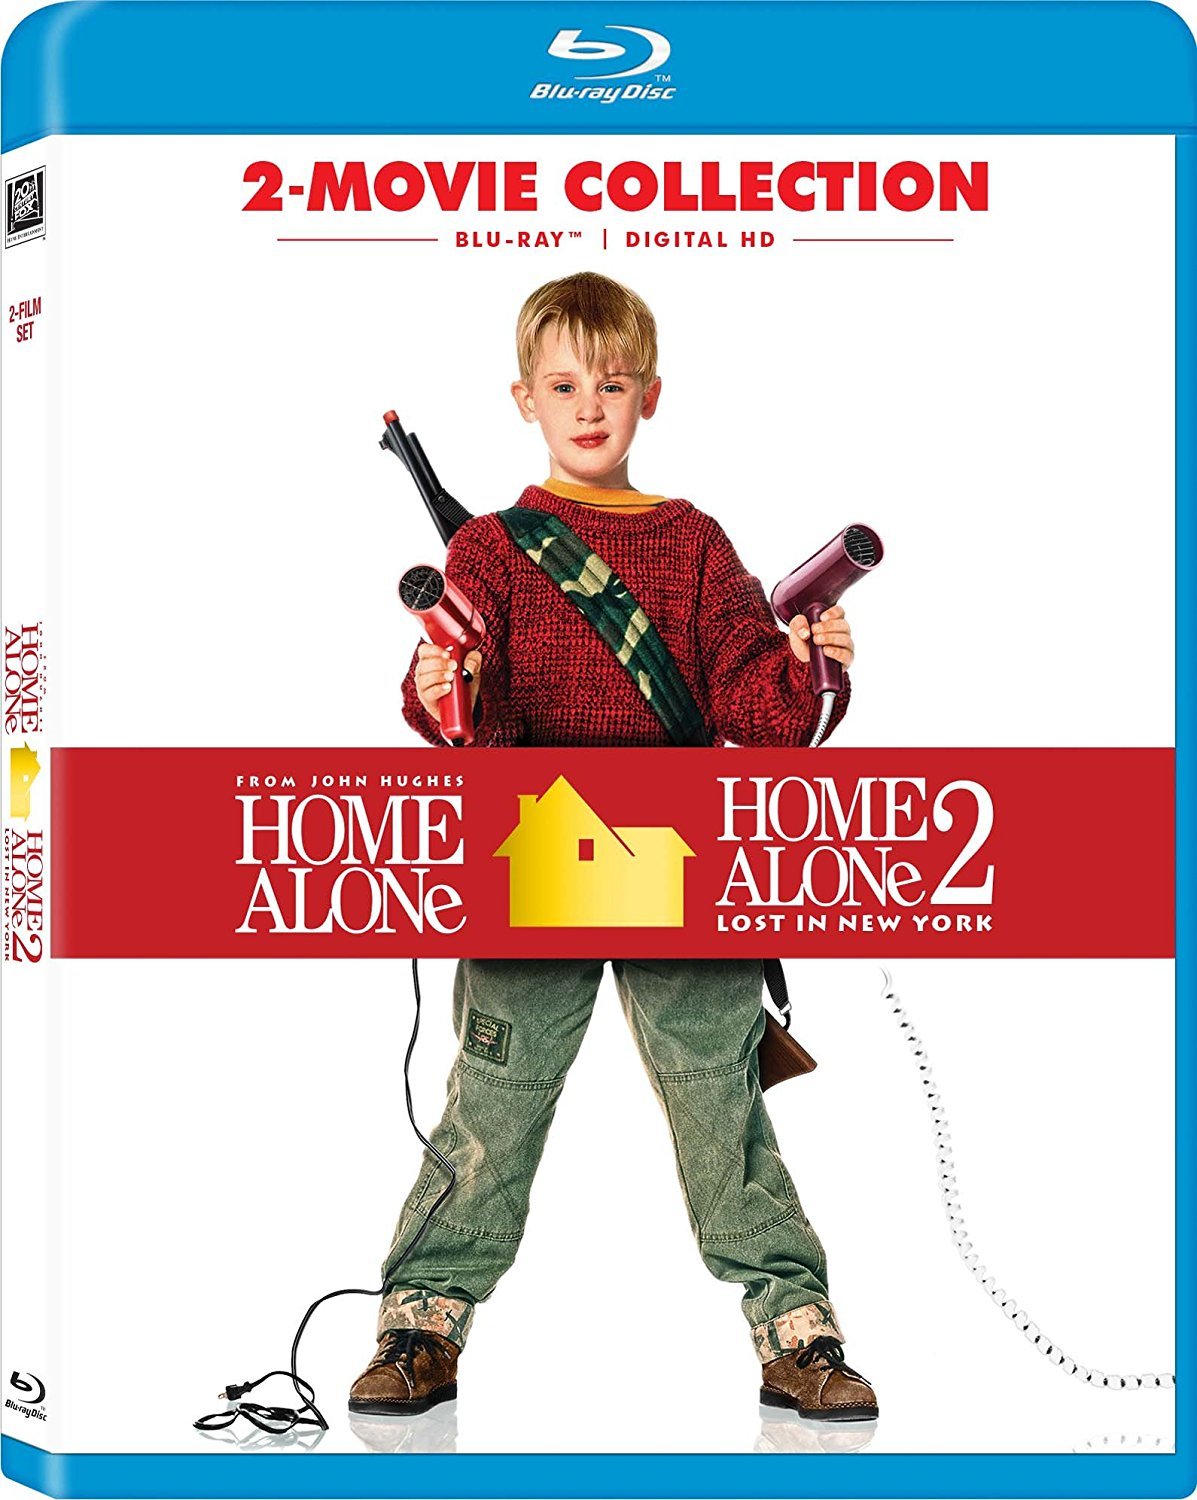 Home Alone: 2-Movie Collection (1990-1992) Mi Pobre Angelito: Colección de 2 Películas (1990-1992) [DTS/AC3 5.1 + SUP] [Blu Ray-Rip] 186909_front